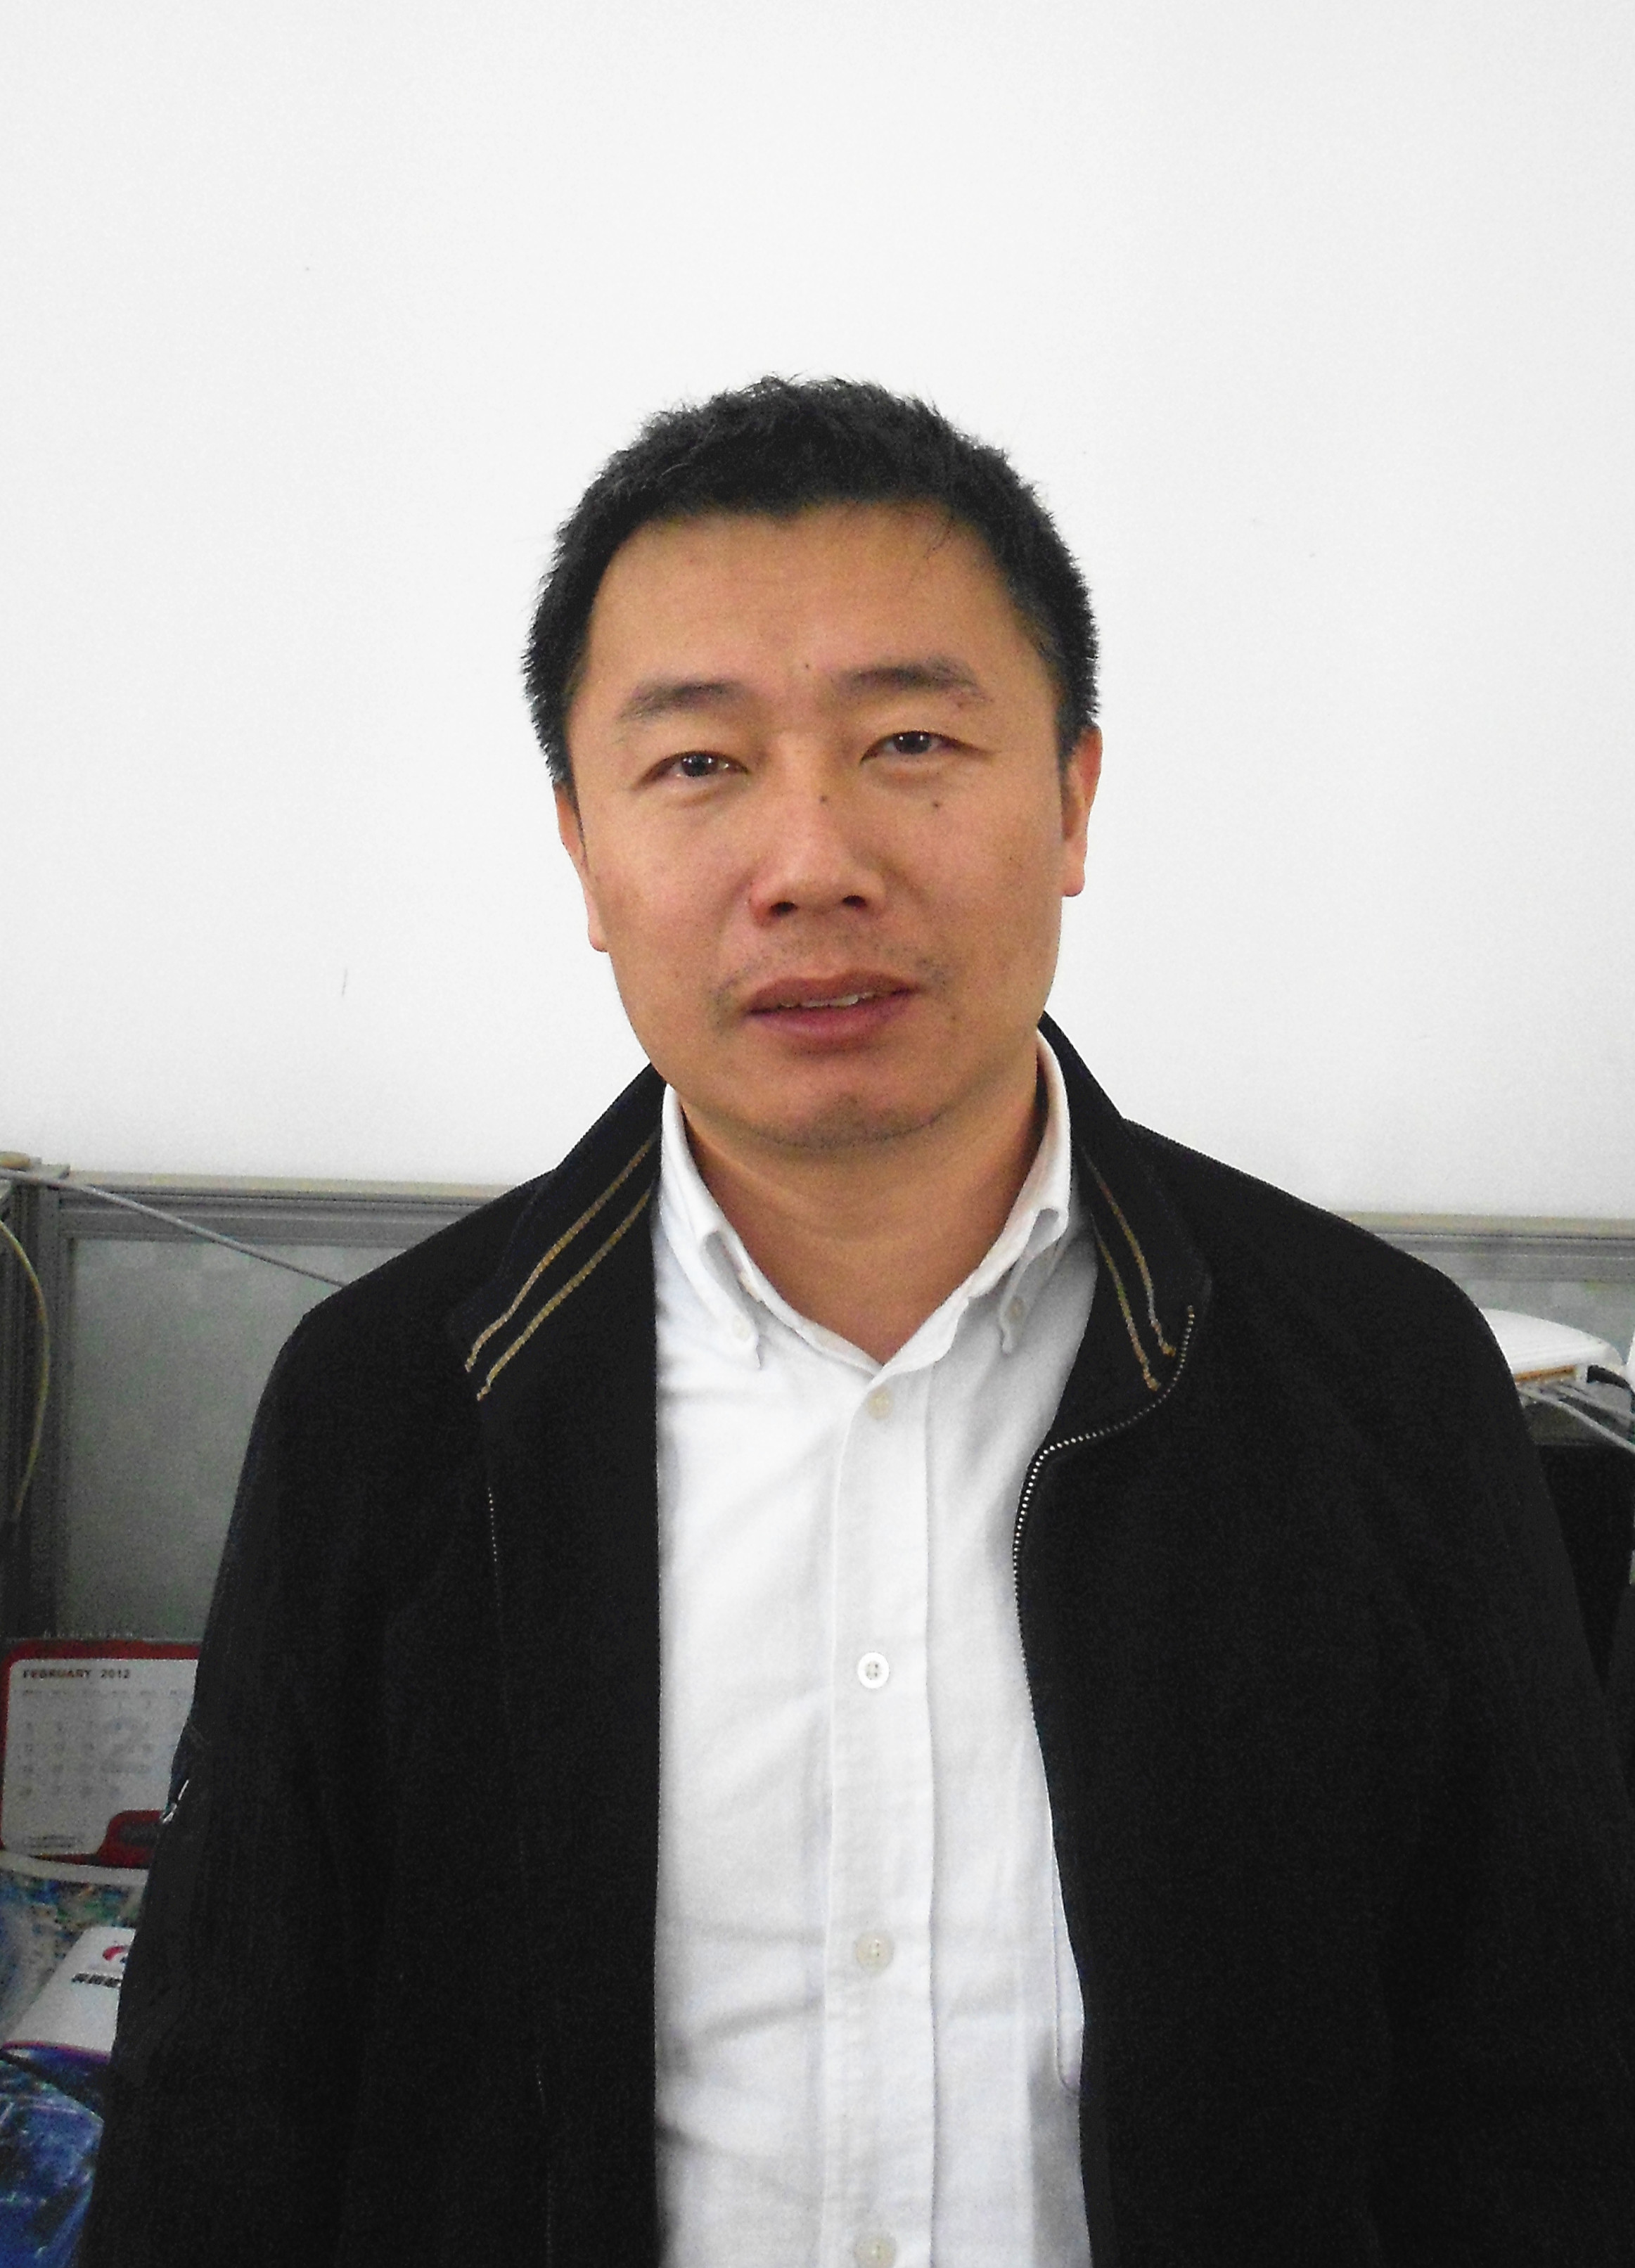 Mr. Zhengqiang Zhu